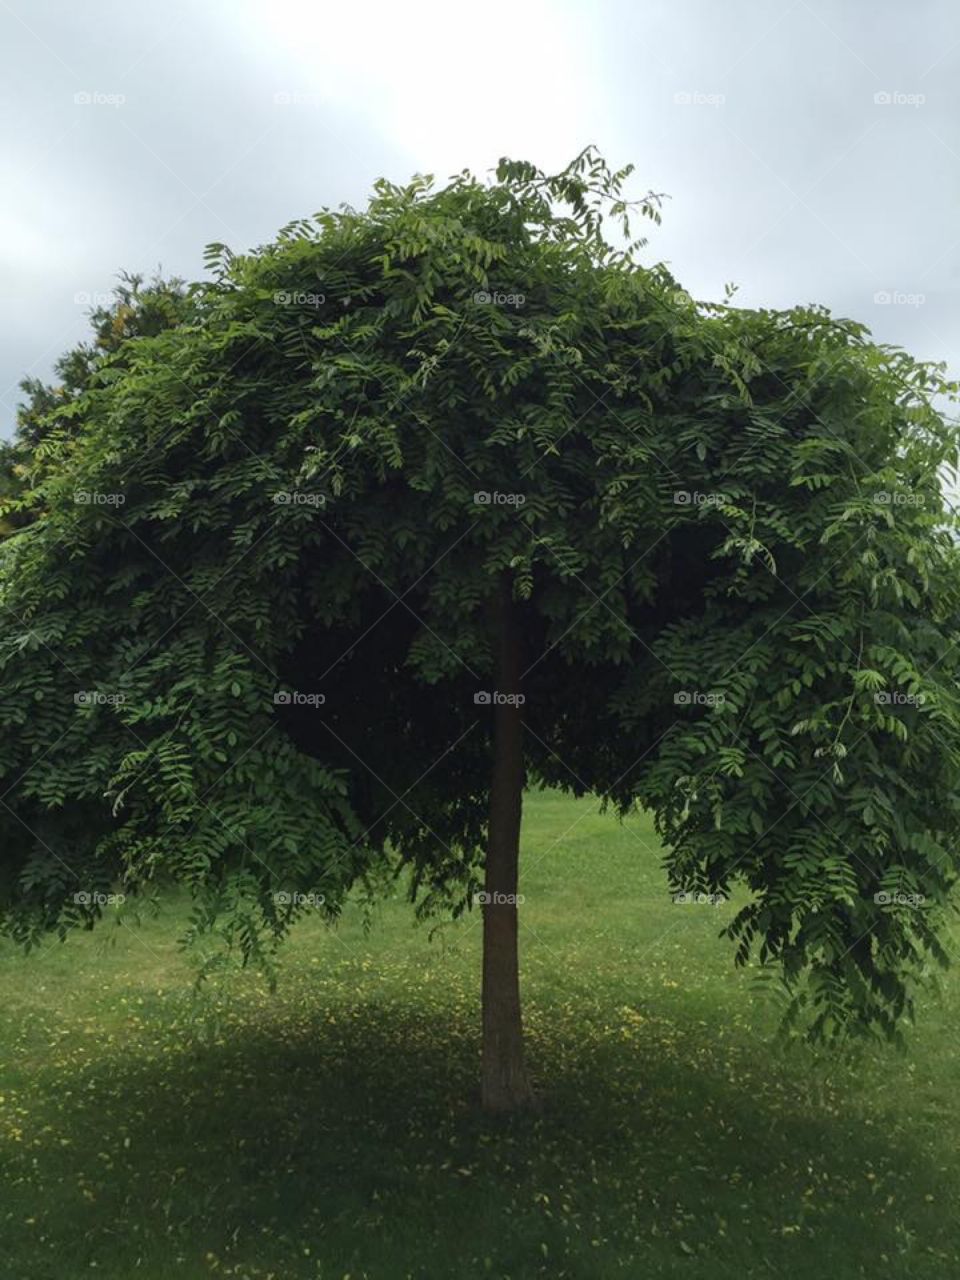 A tree in my garden🌳